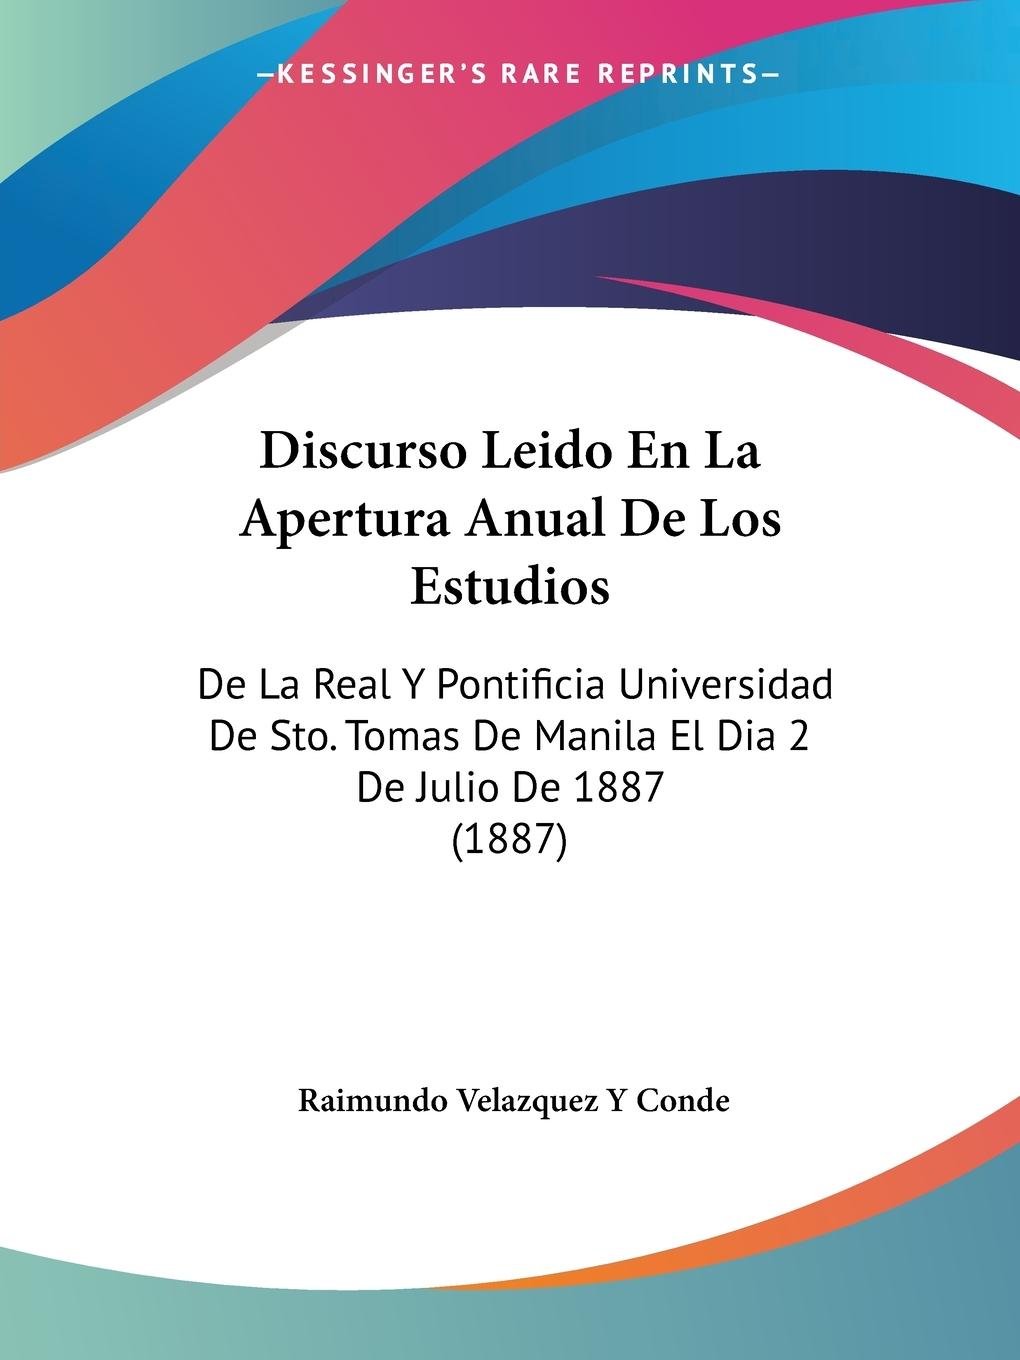 Discurso Leido En La Apertura Anual De Los Estudios - Conde, Raimundo Velazquez Y